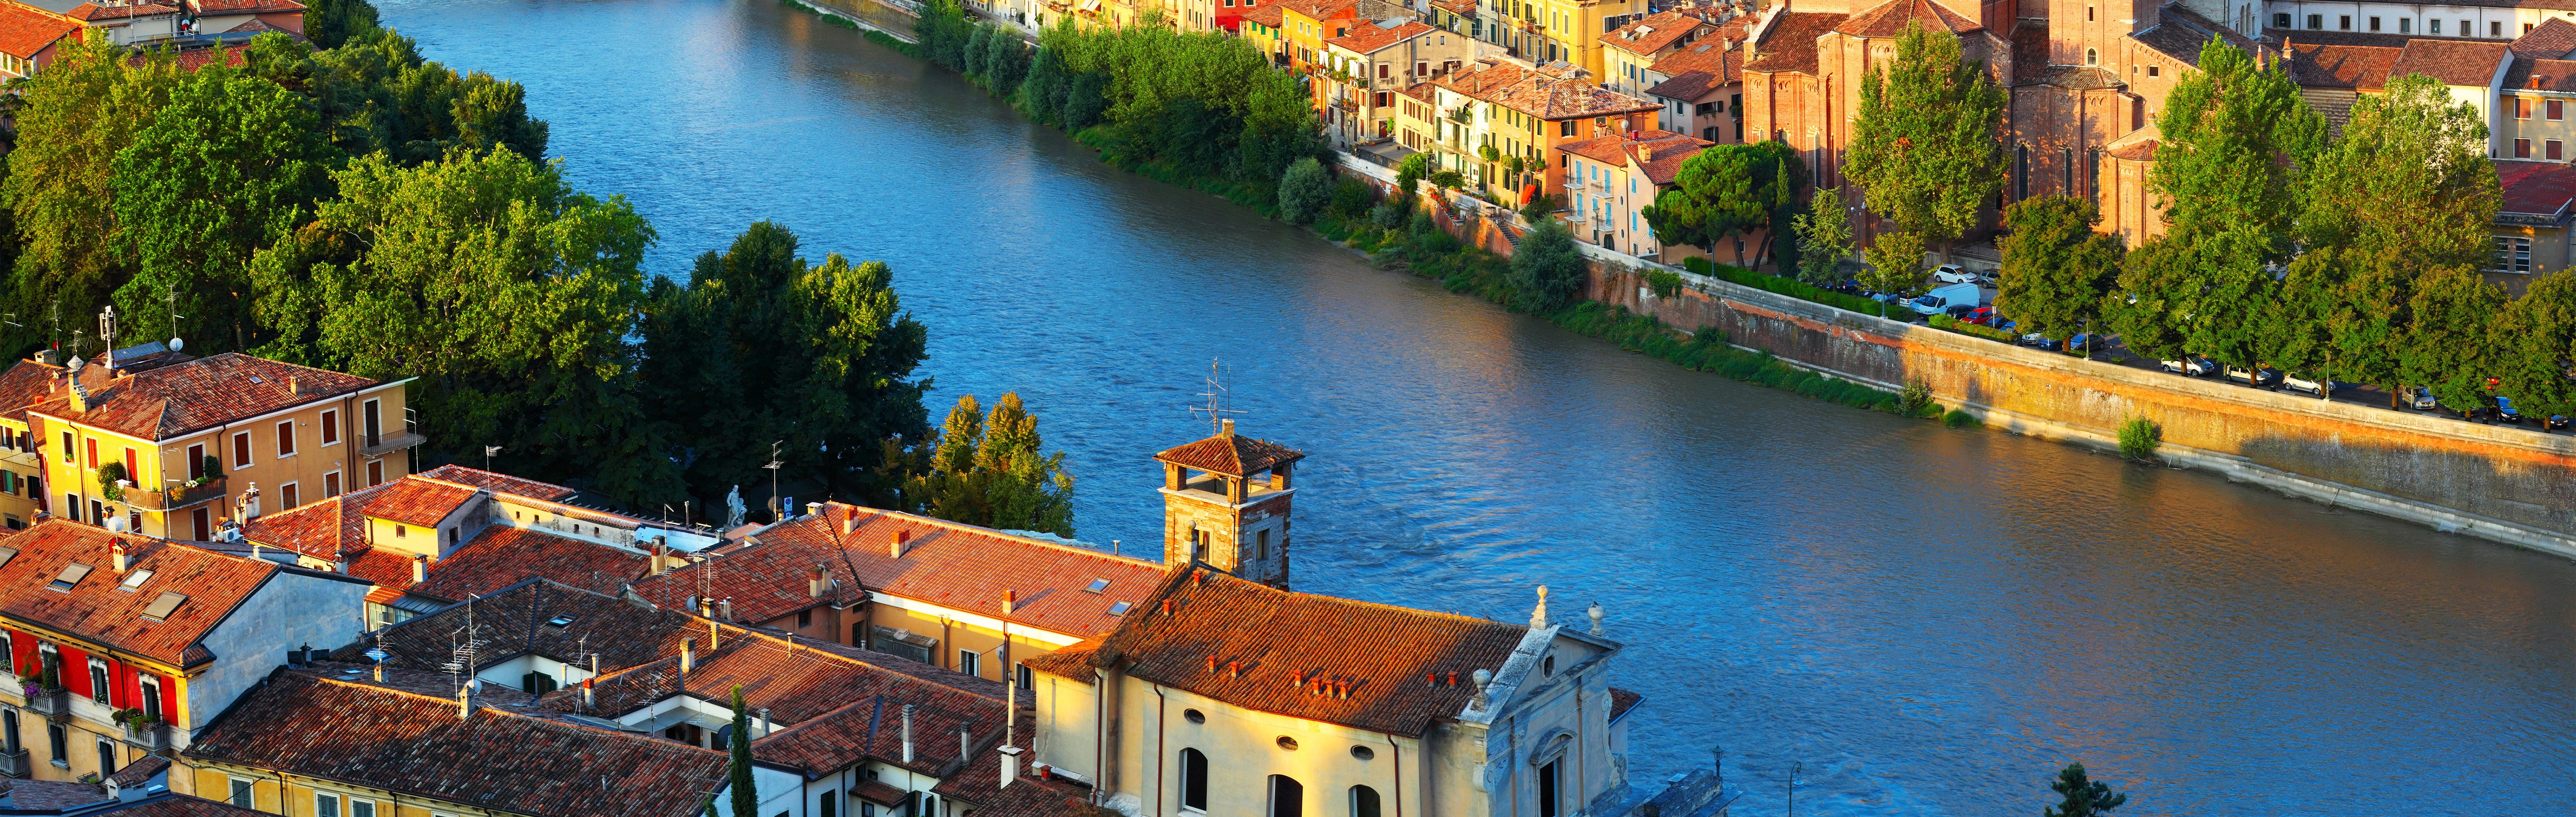 Day Trip to Verona and Lake Garda – Departing from Milan